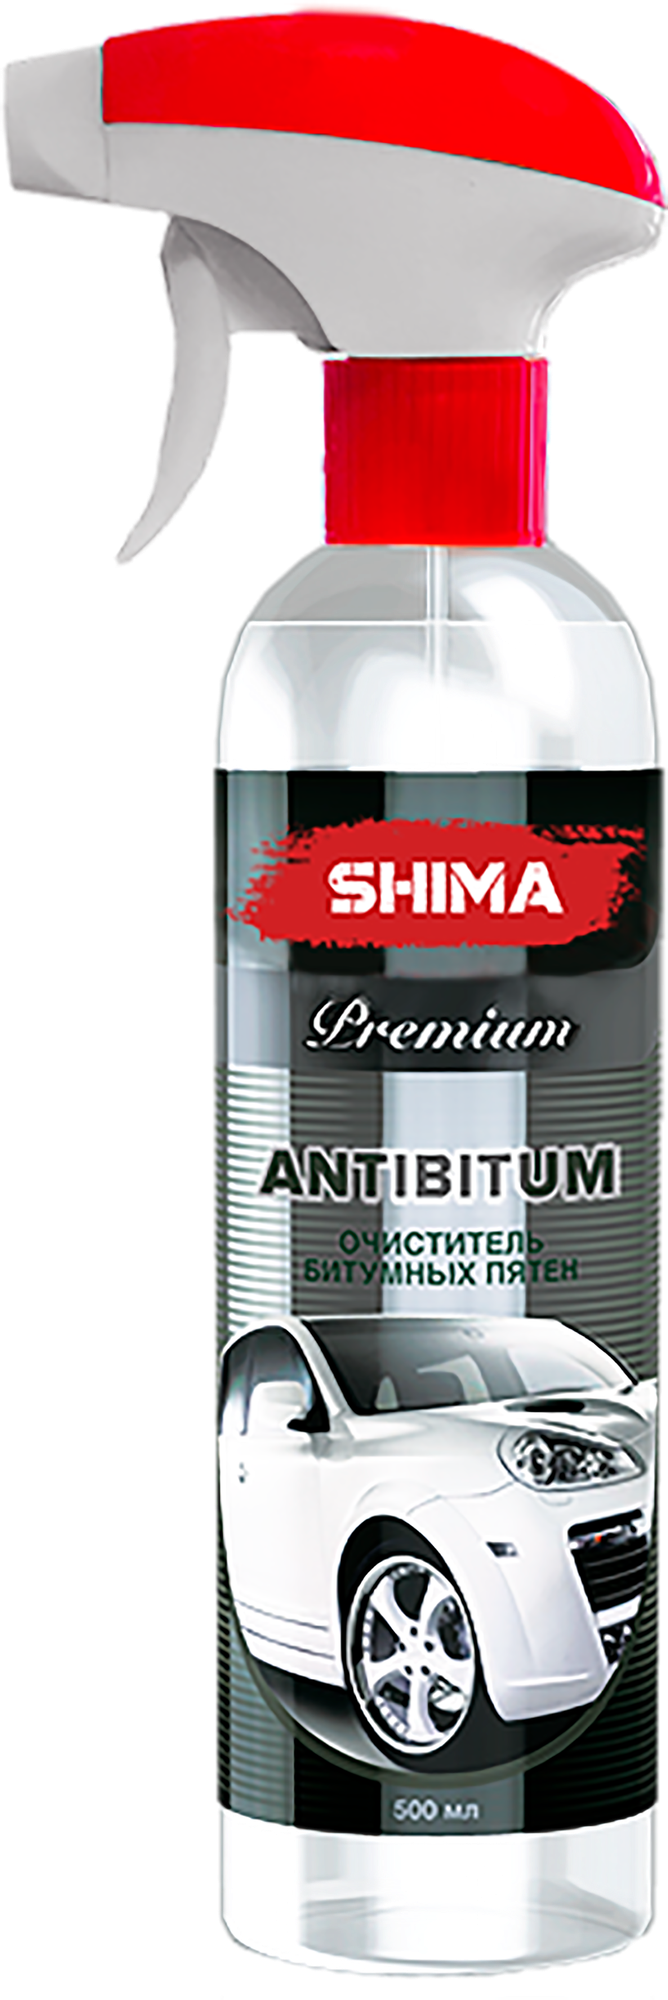 Очиститель кузова автомобиля от битумных пятен / антибитум / очиститель битумных пятен SHIMA Premium ANTIBITUM 500 мл. Art: 4631111103371